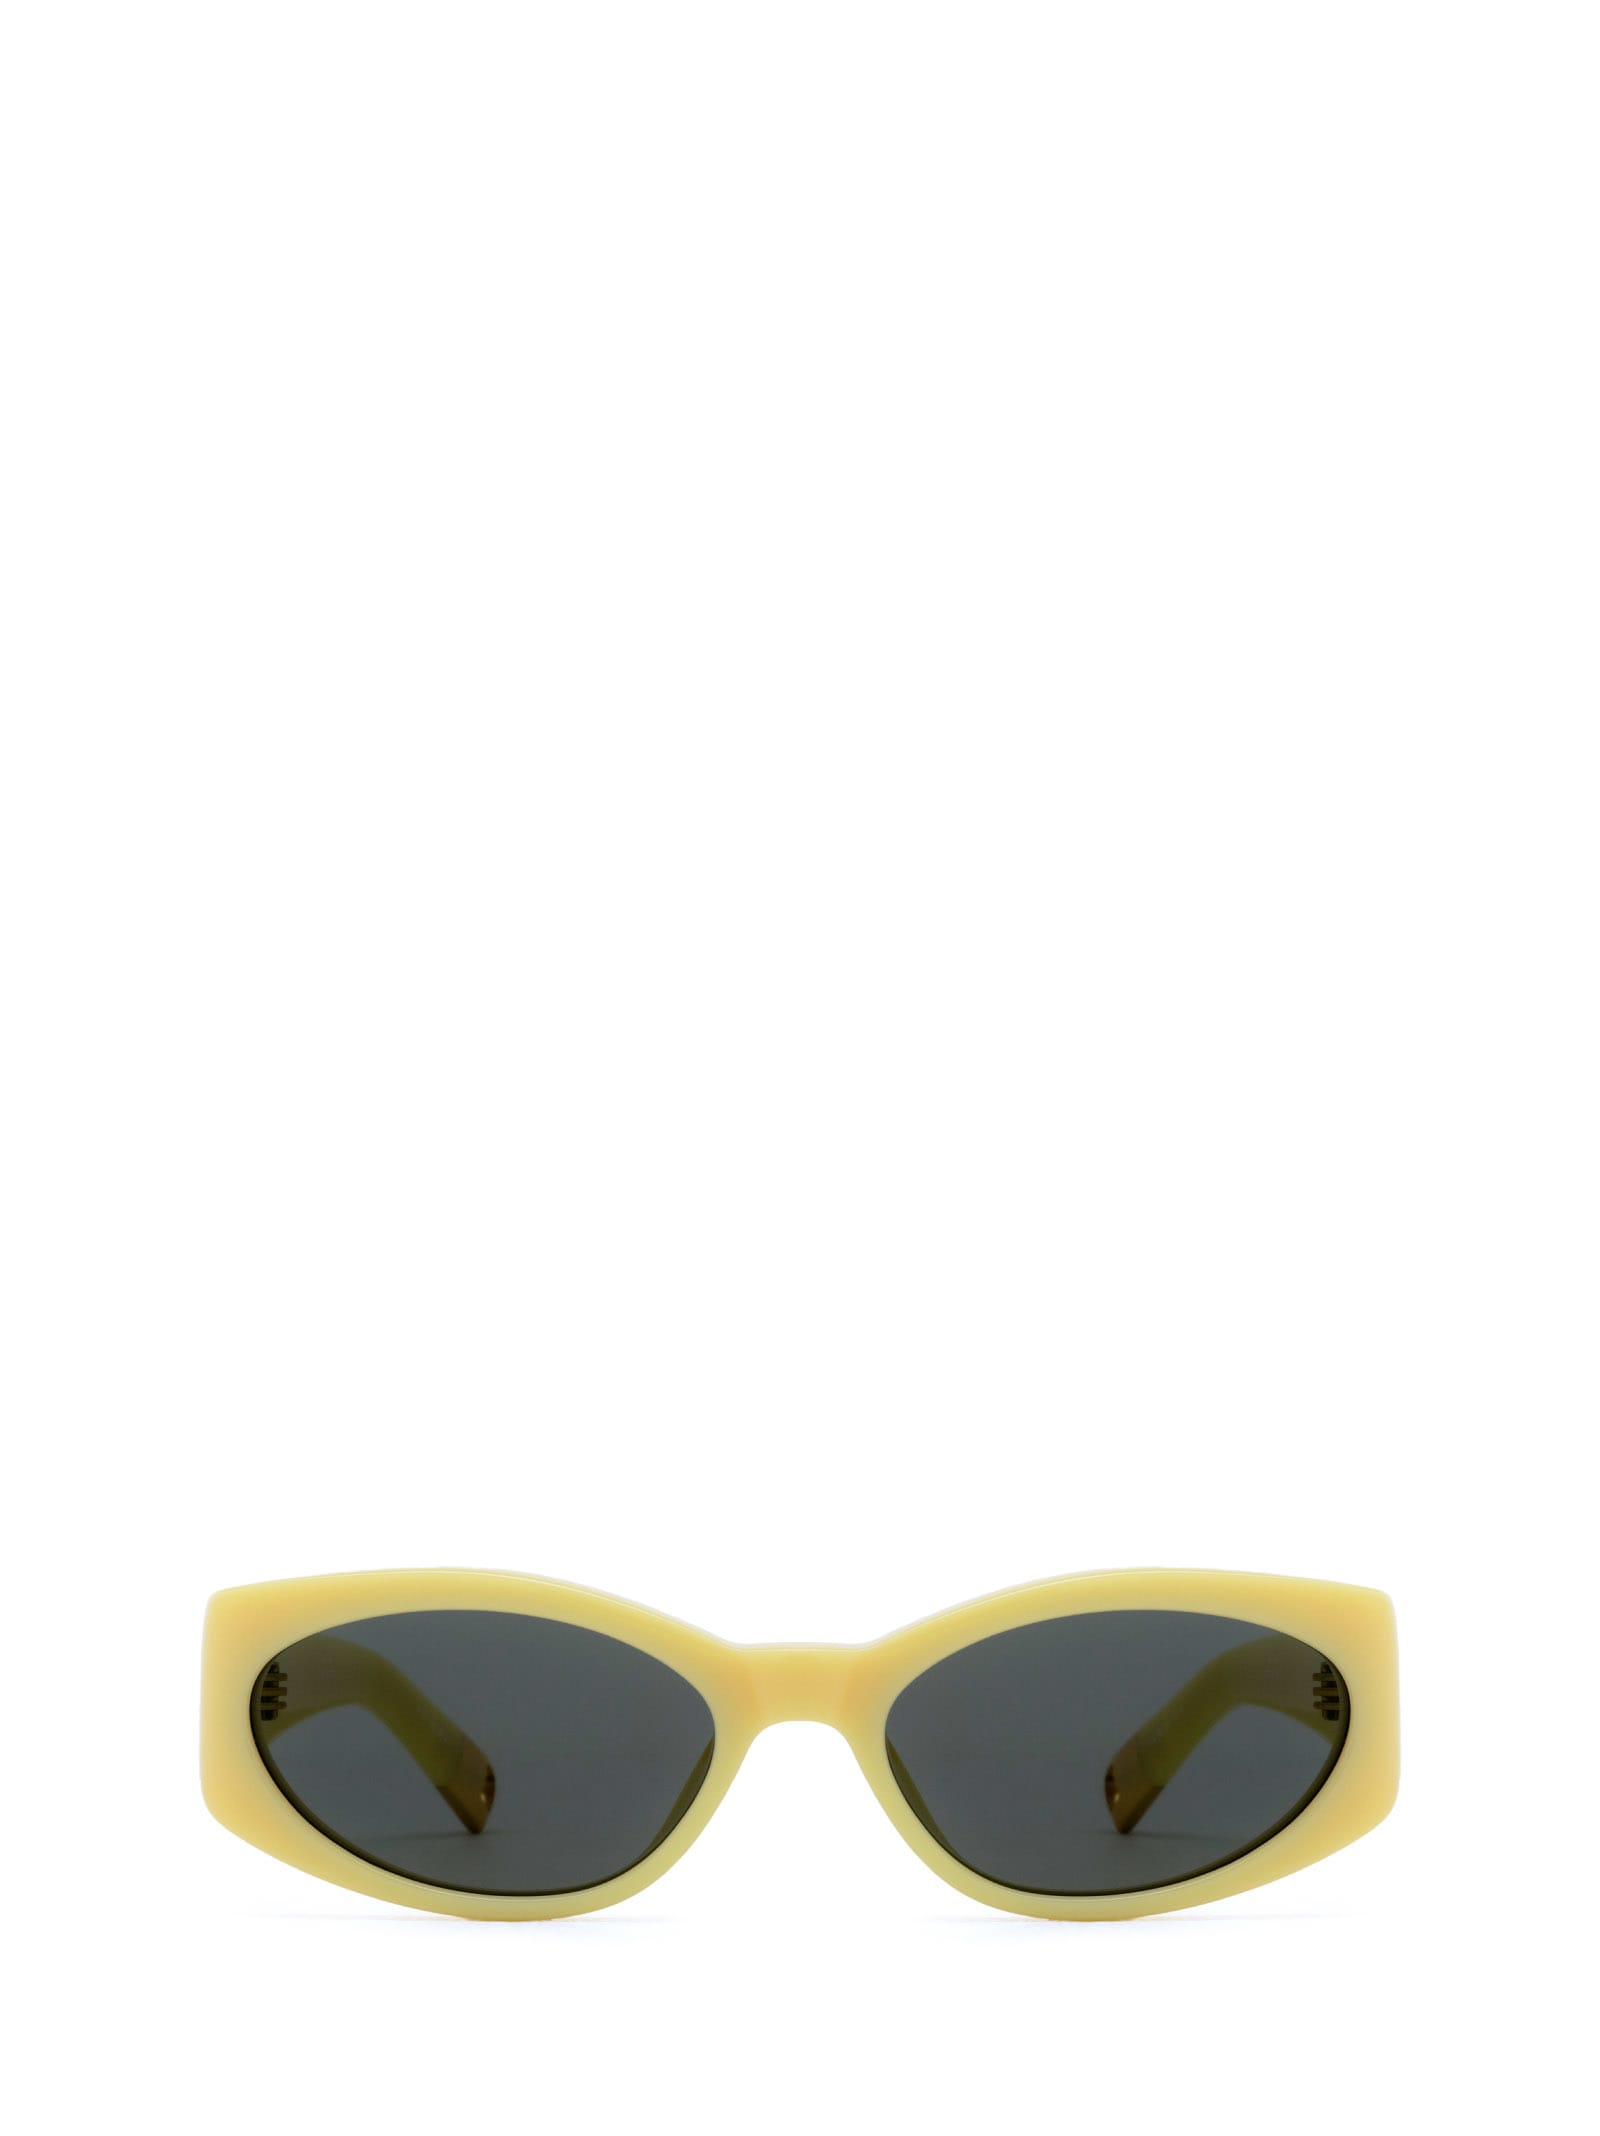 Jac4 Yellow Sunglasses